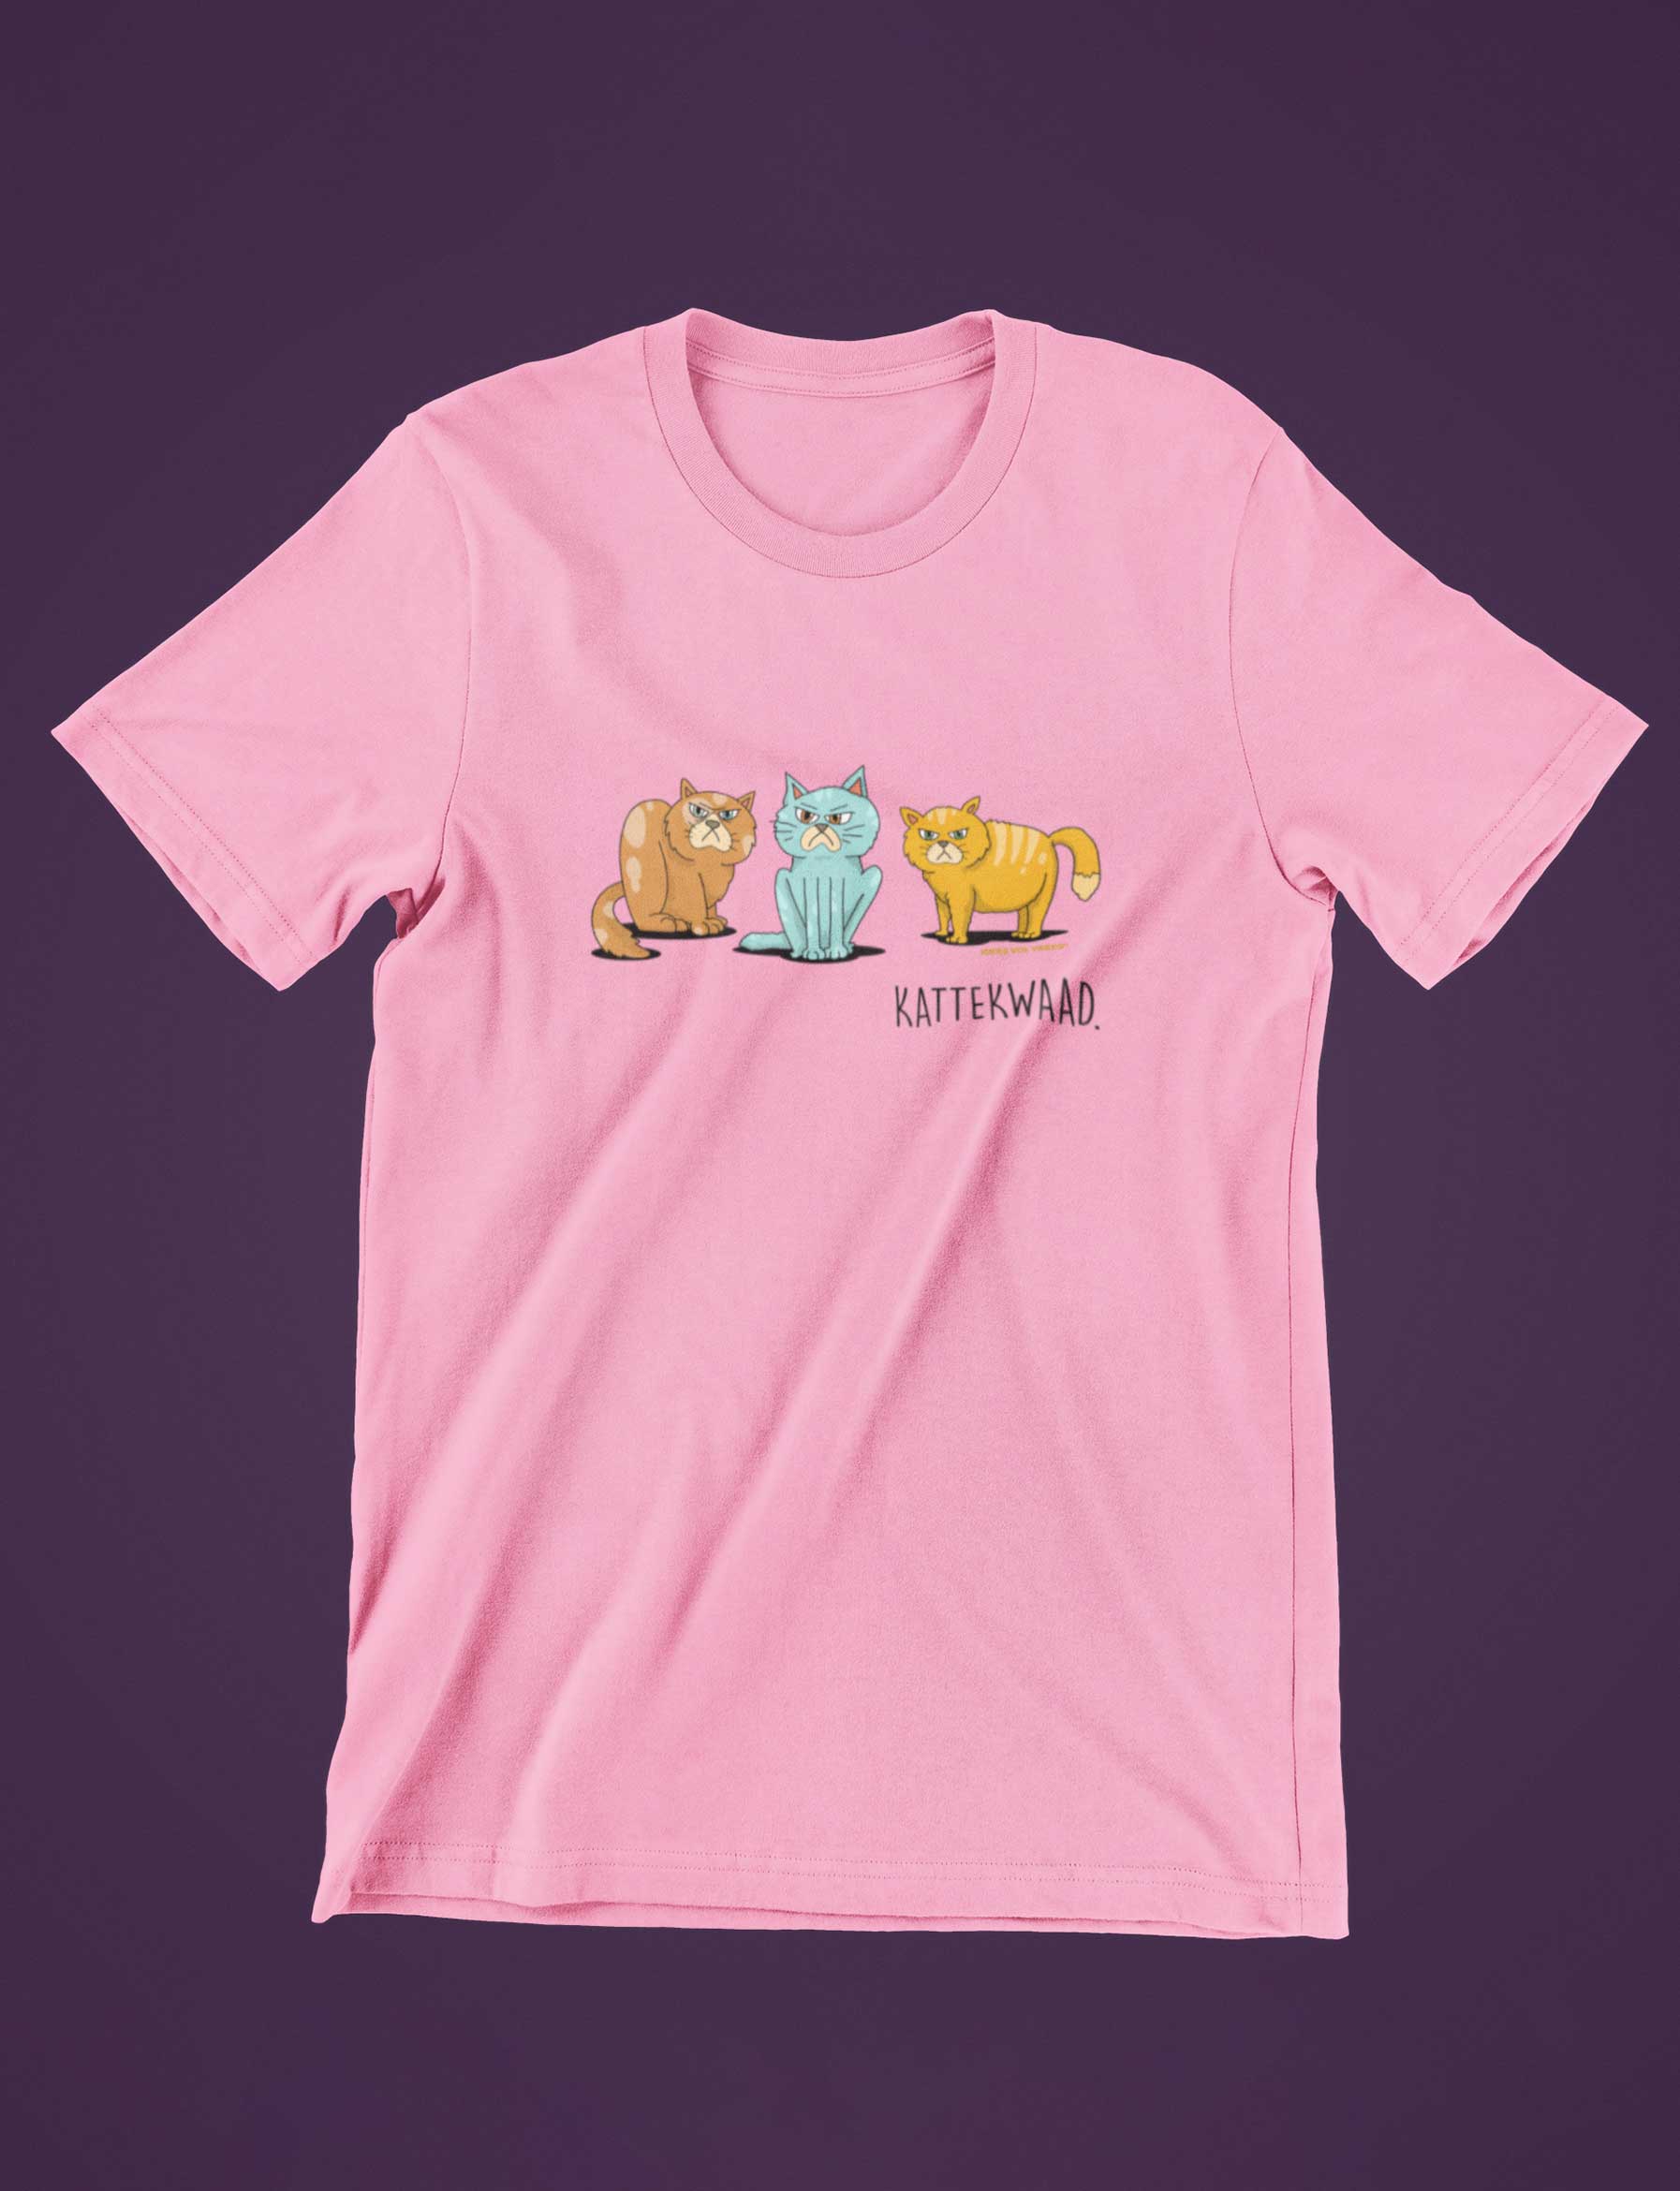 Idees Vol Vrees® Kattekwaad  Pink Unisex T-shirt